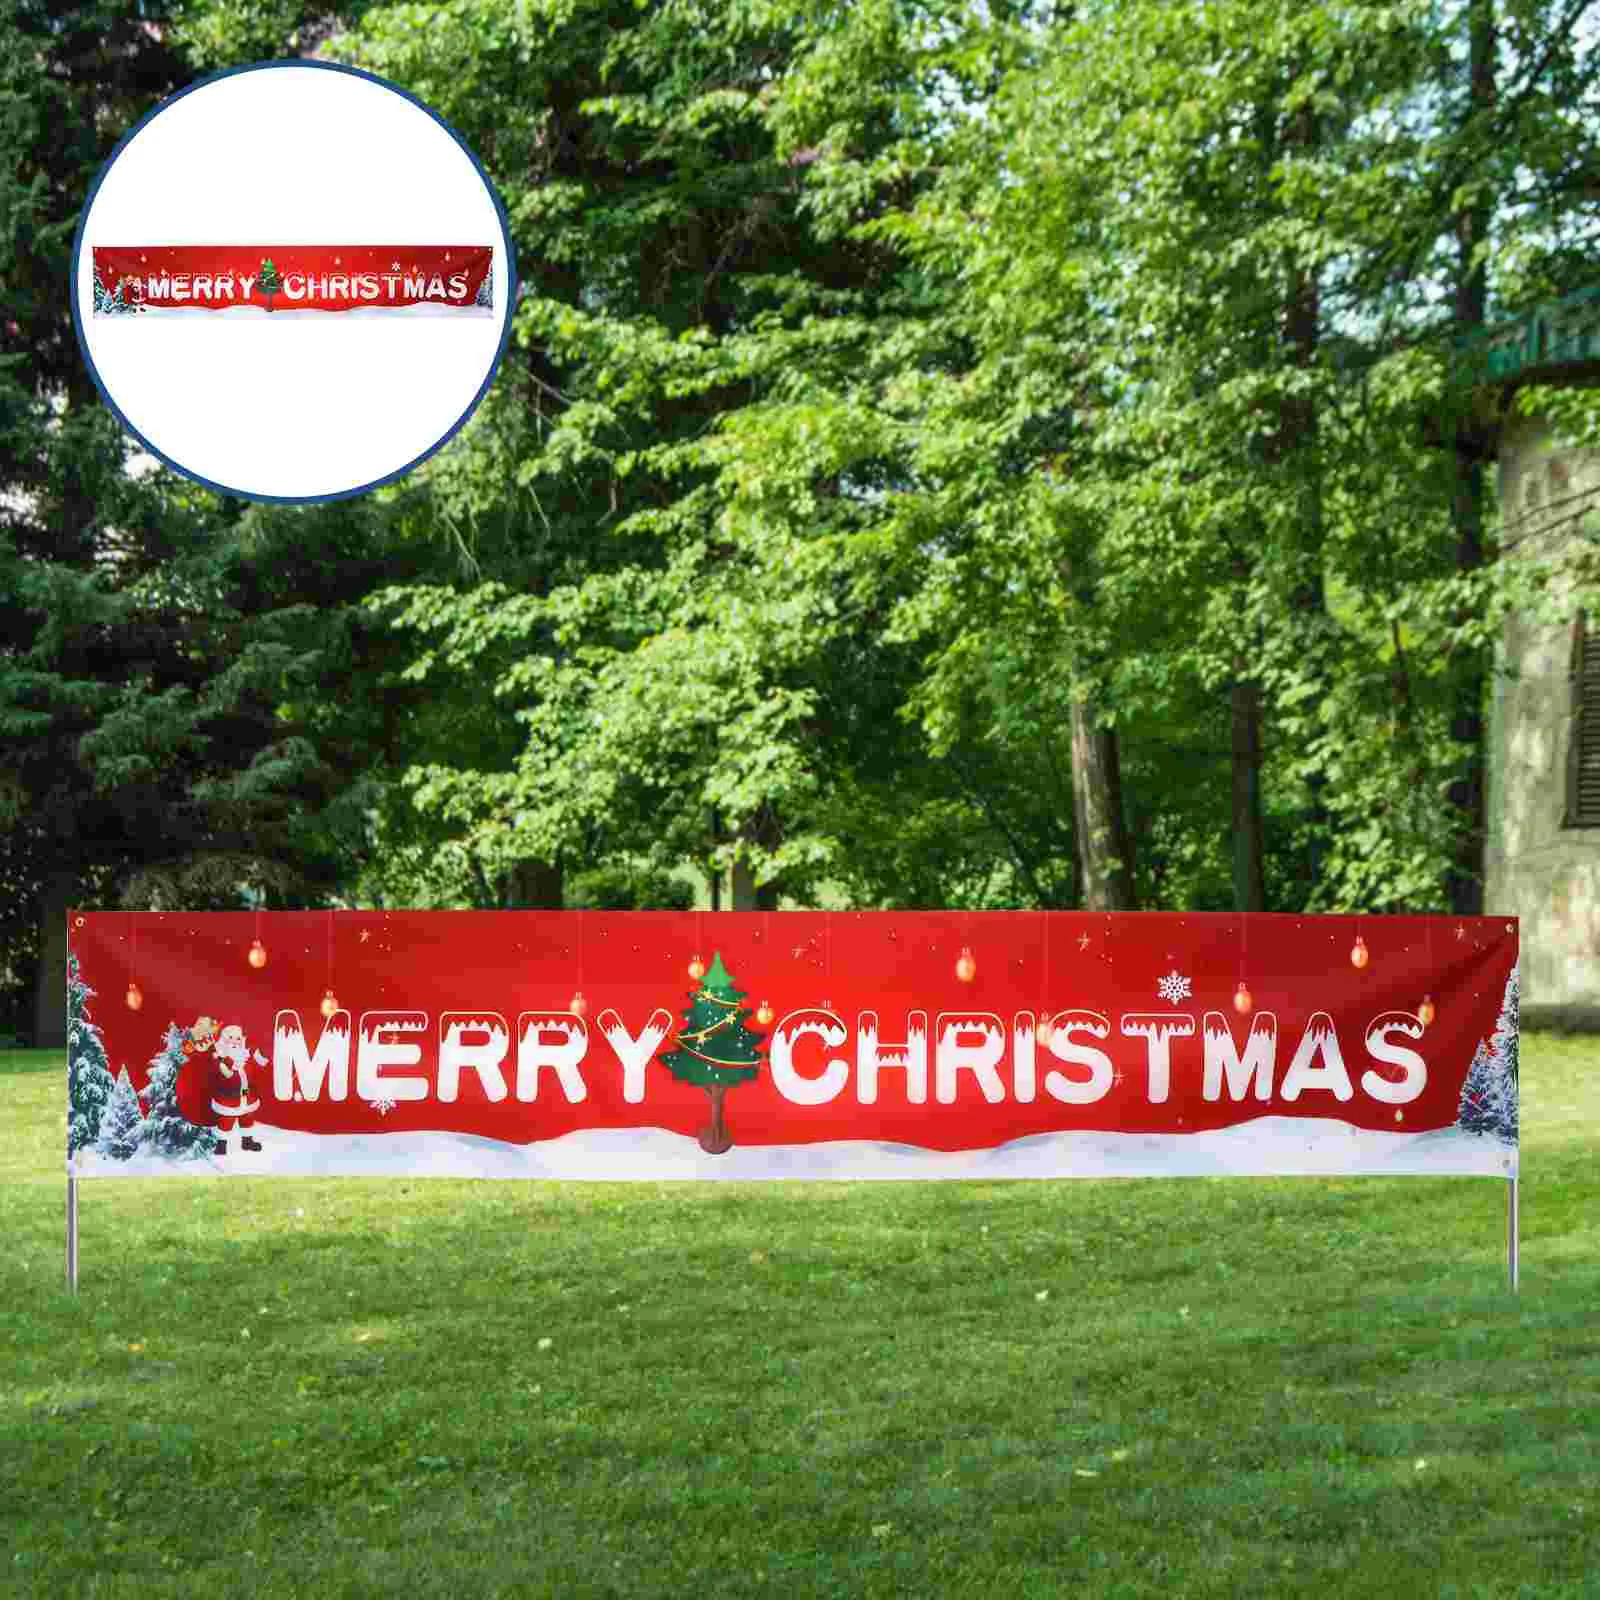 

1pc Christmas Garage Banner Large Christmas Flag Large Christmas Banners Christmas Indoor Ornaments